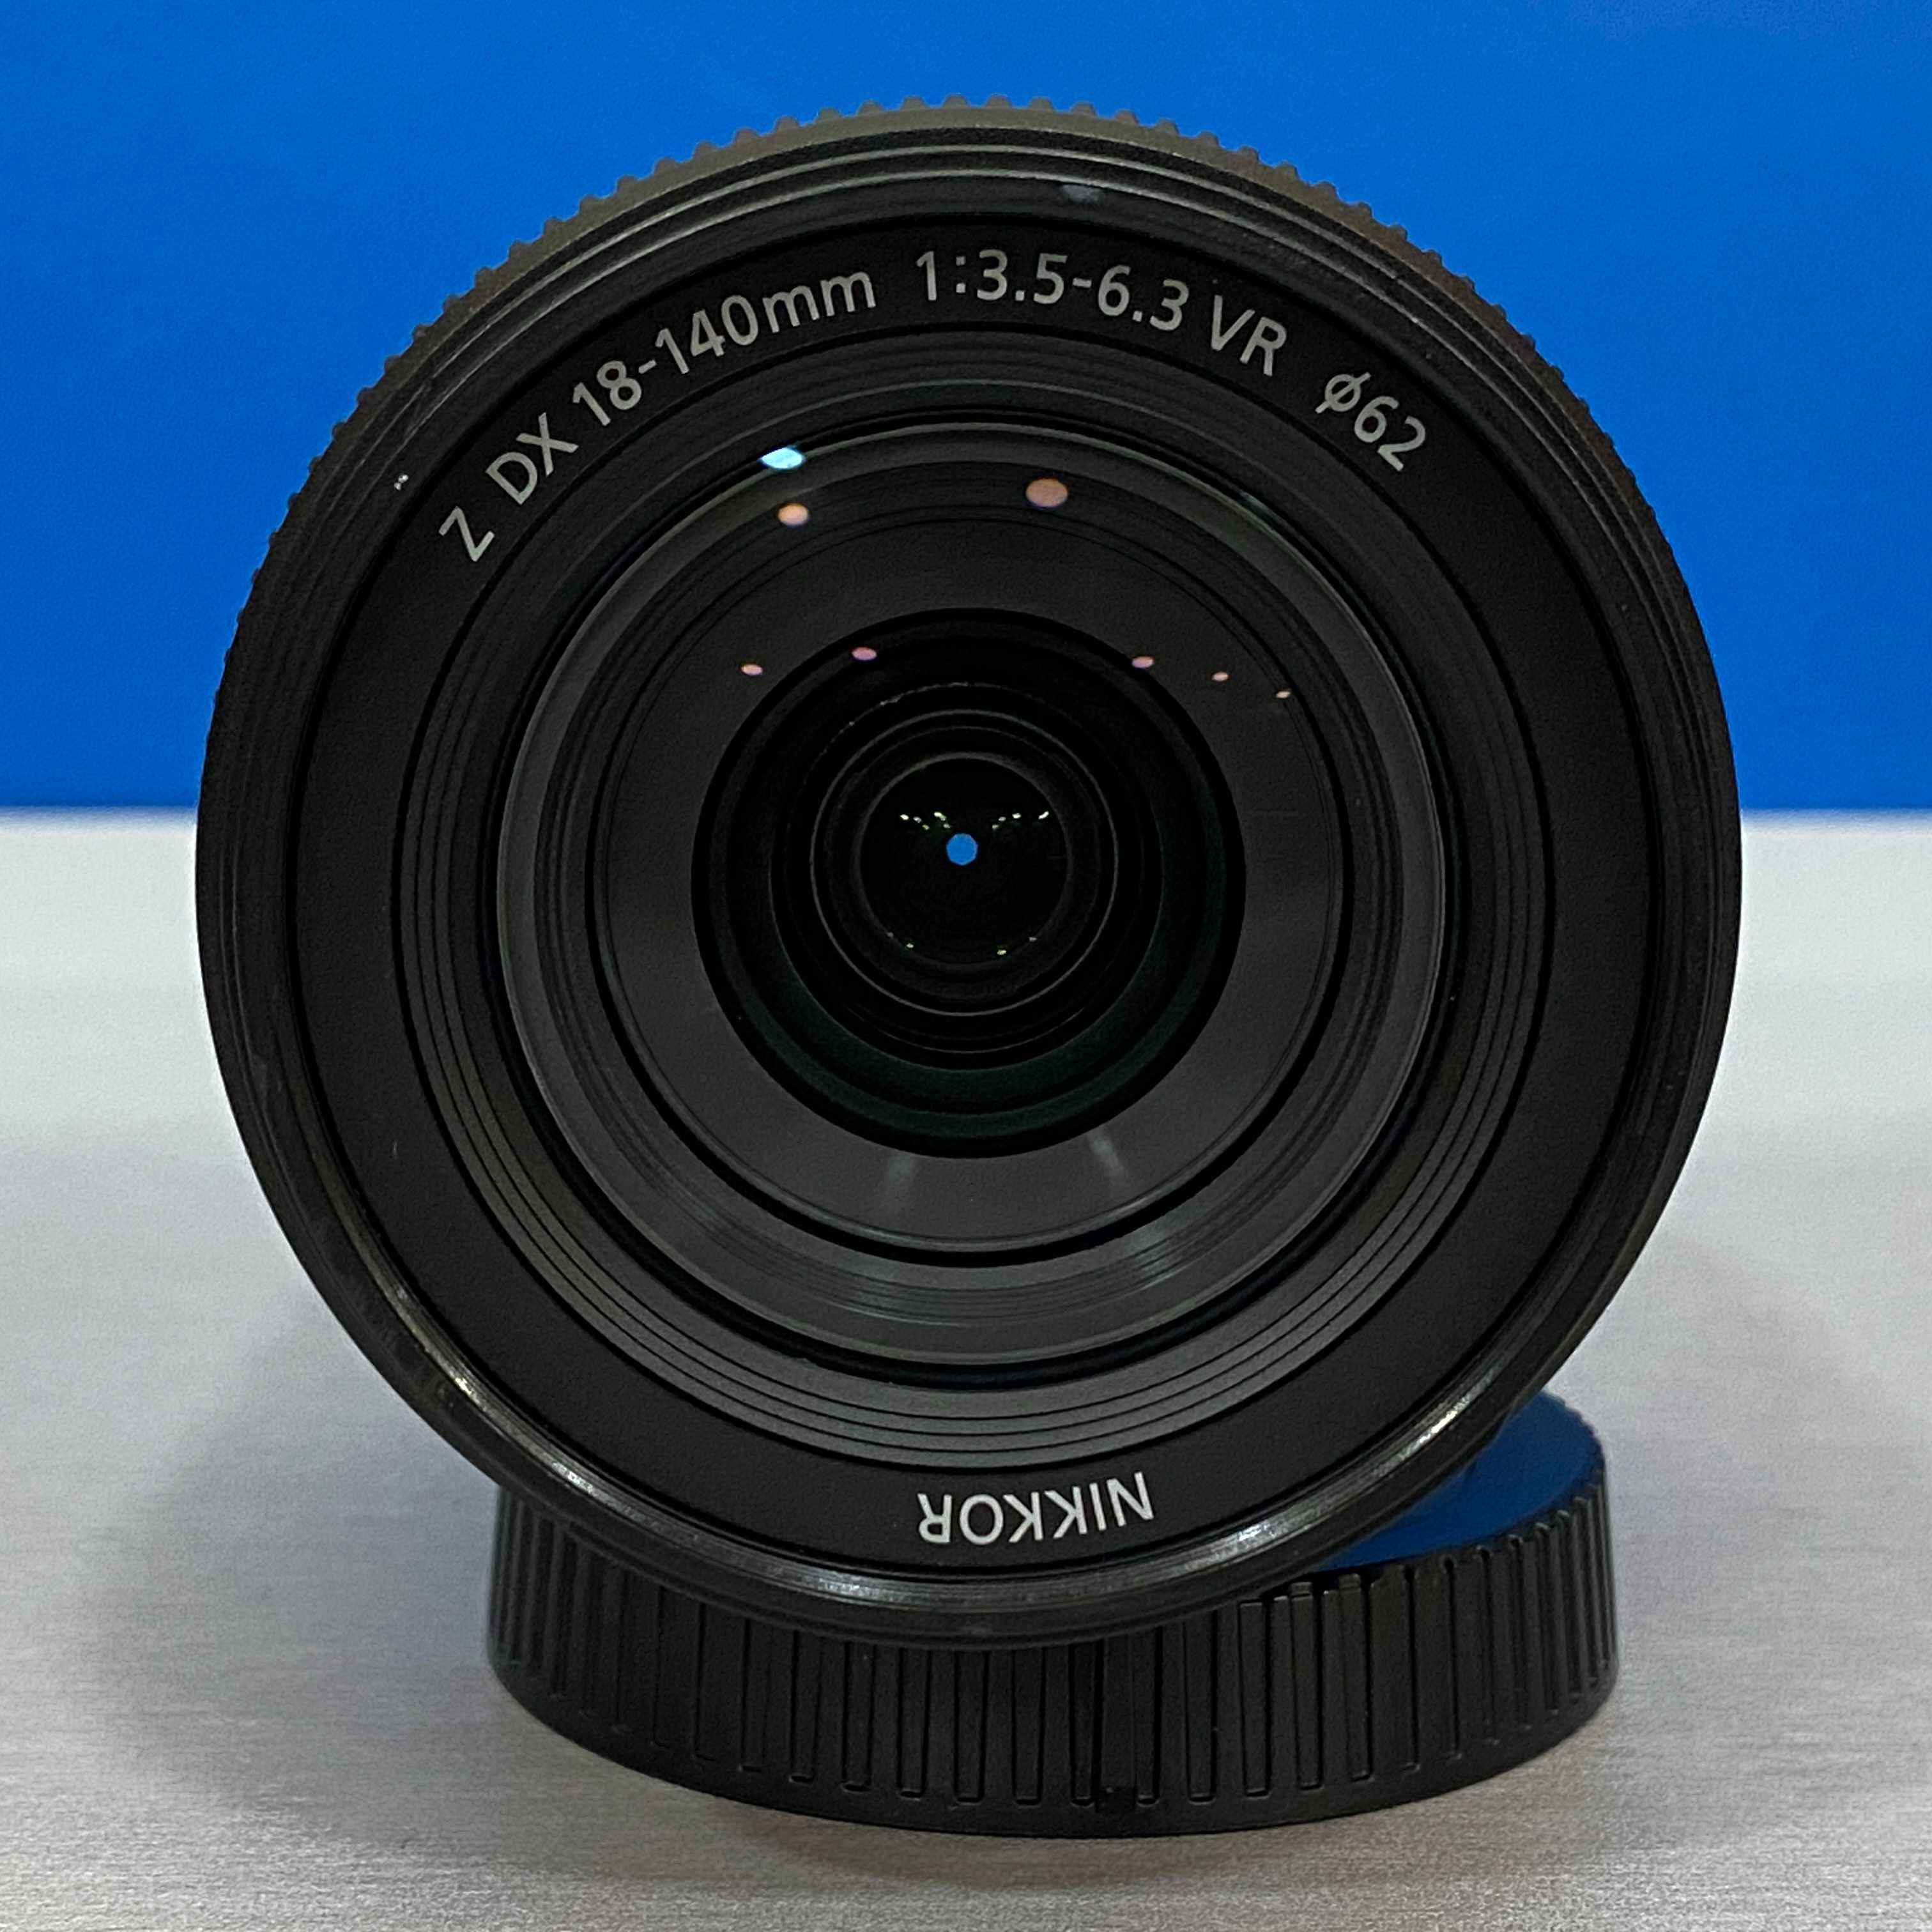 Nikon Nikkor Z 18-140mm f/3.5-6.3 DX VR